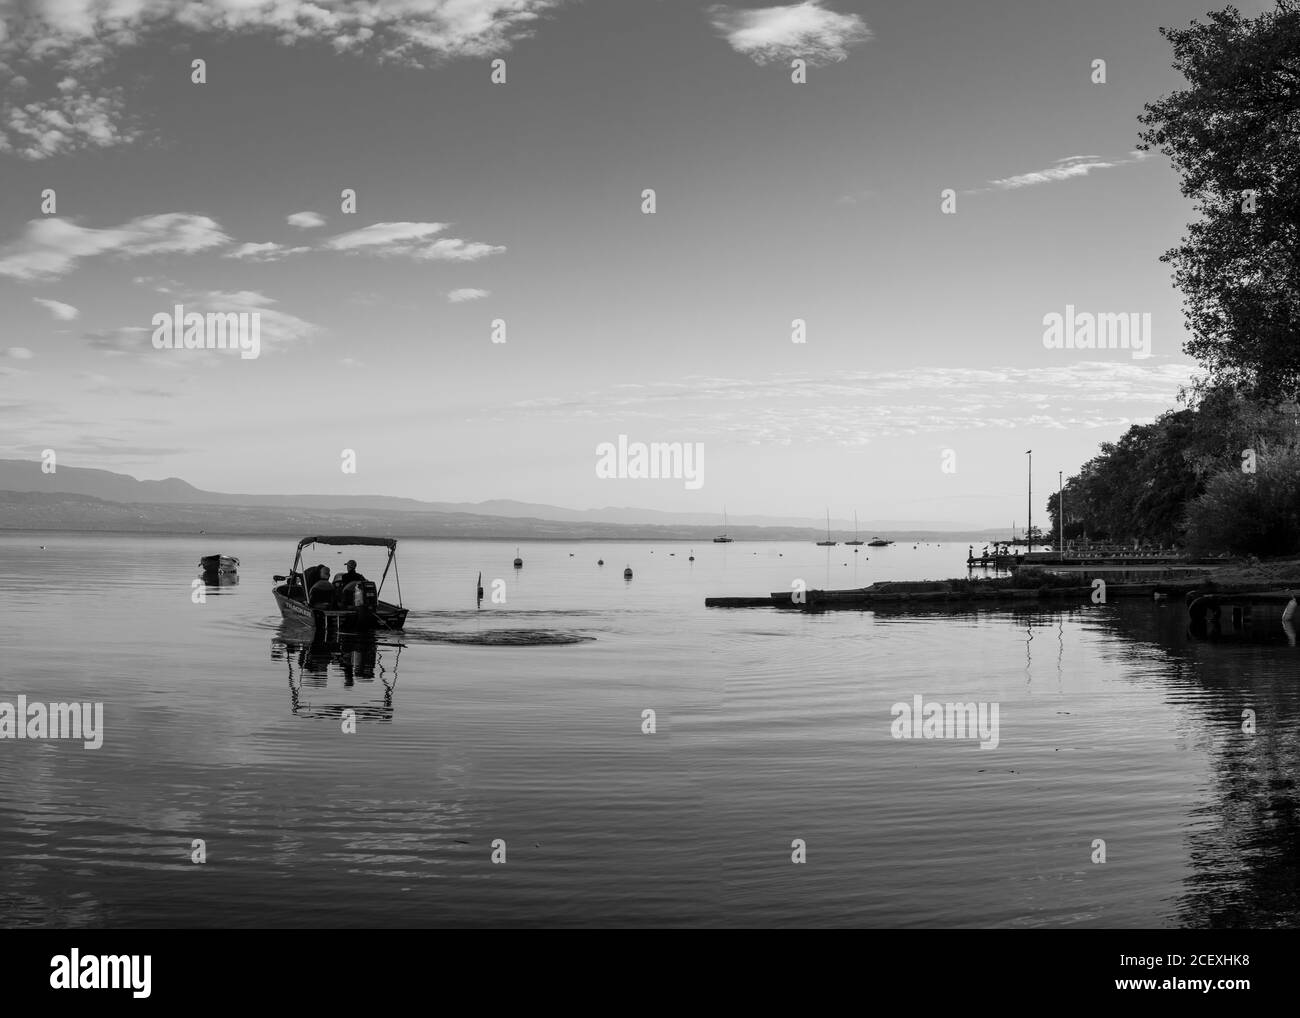 Un bateau sur le lac de Genève, image en noir et blanc Banque D'Images